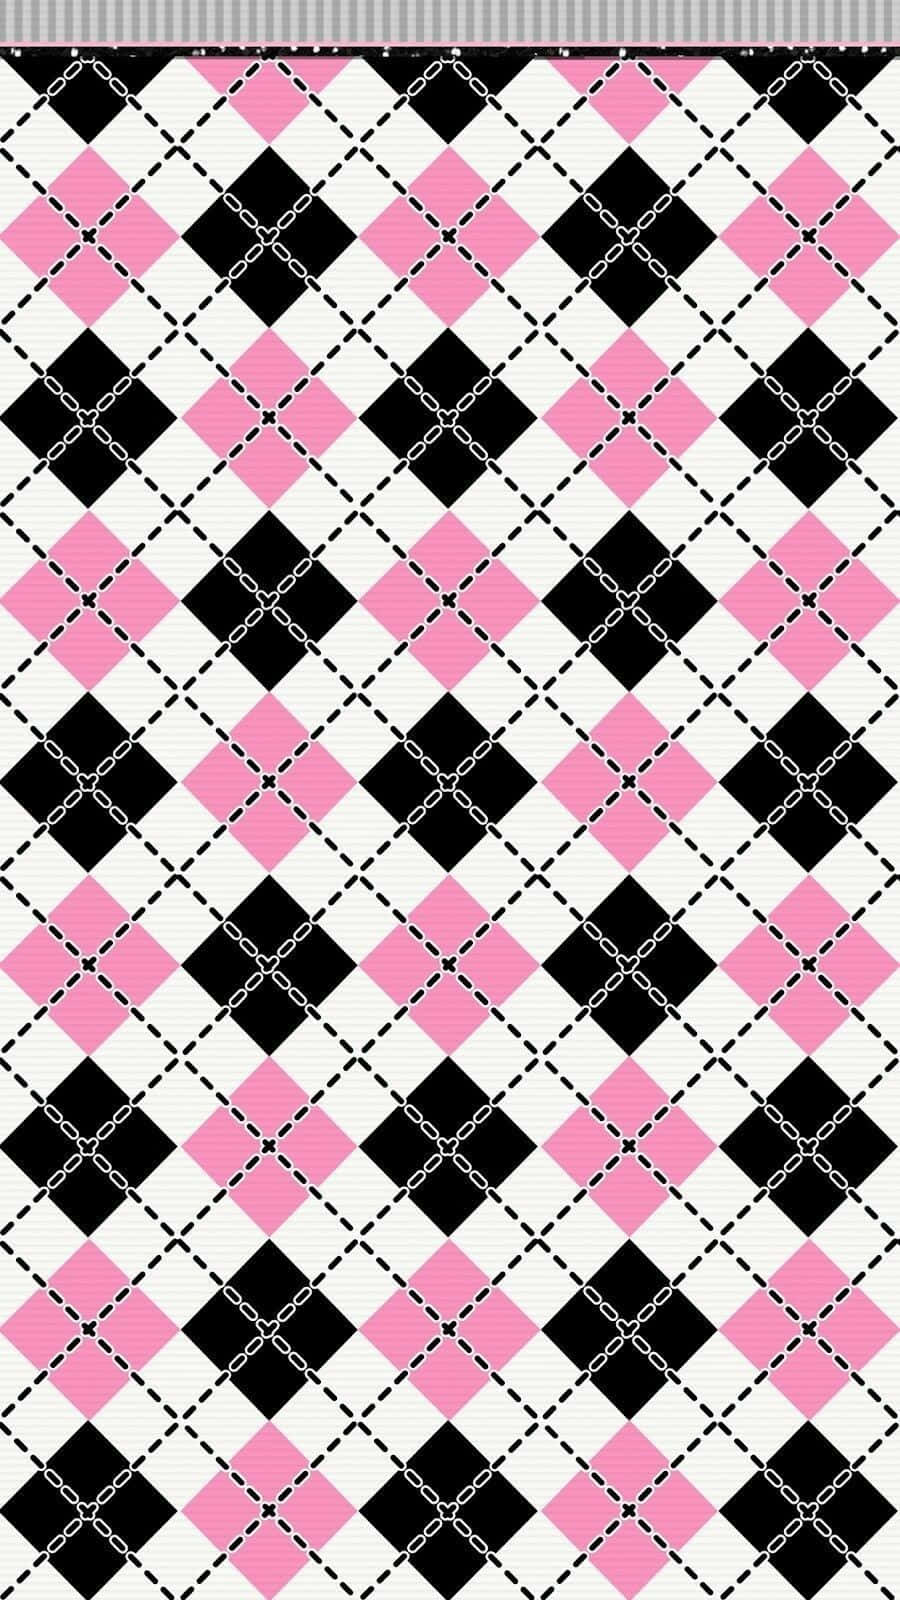 Einelebendige Und Kühne Kombination Aus Pink, Schwarz Und Weiß. Wallpaper